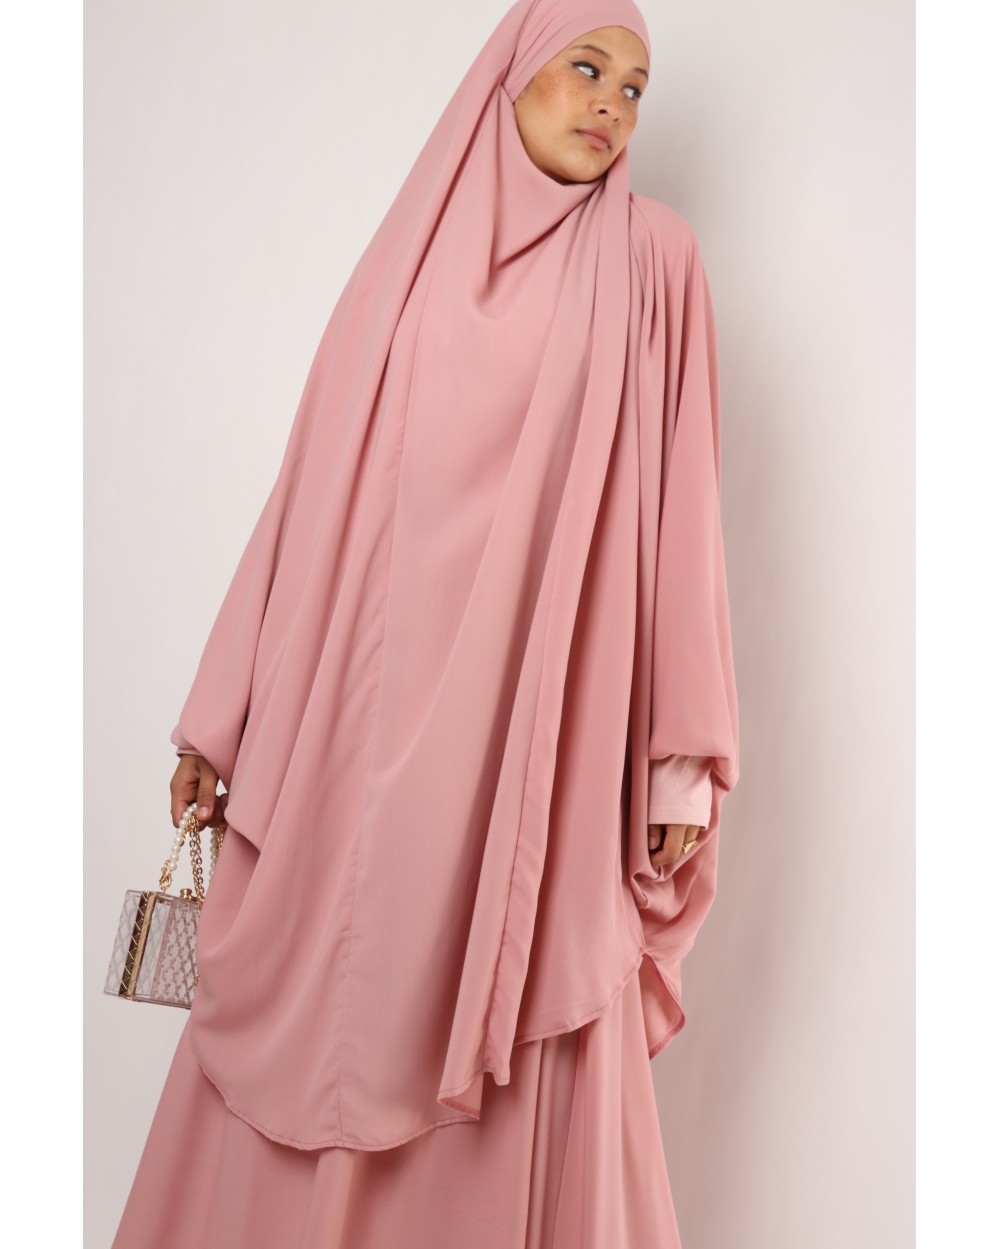 Jilbab Joumana set with skirt